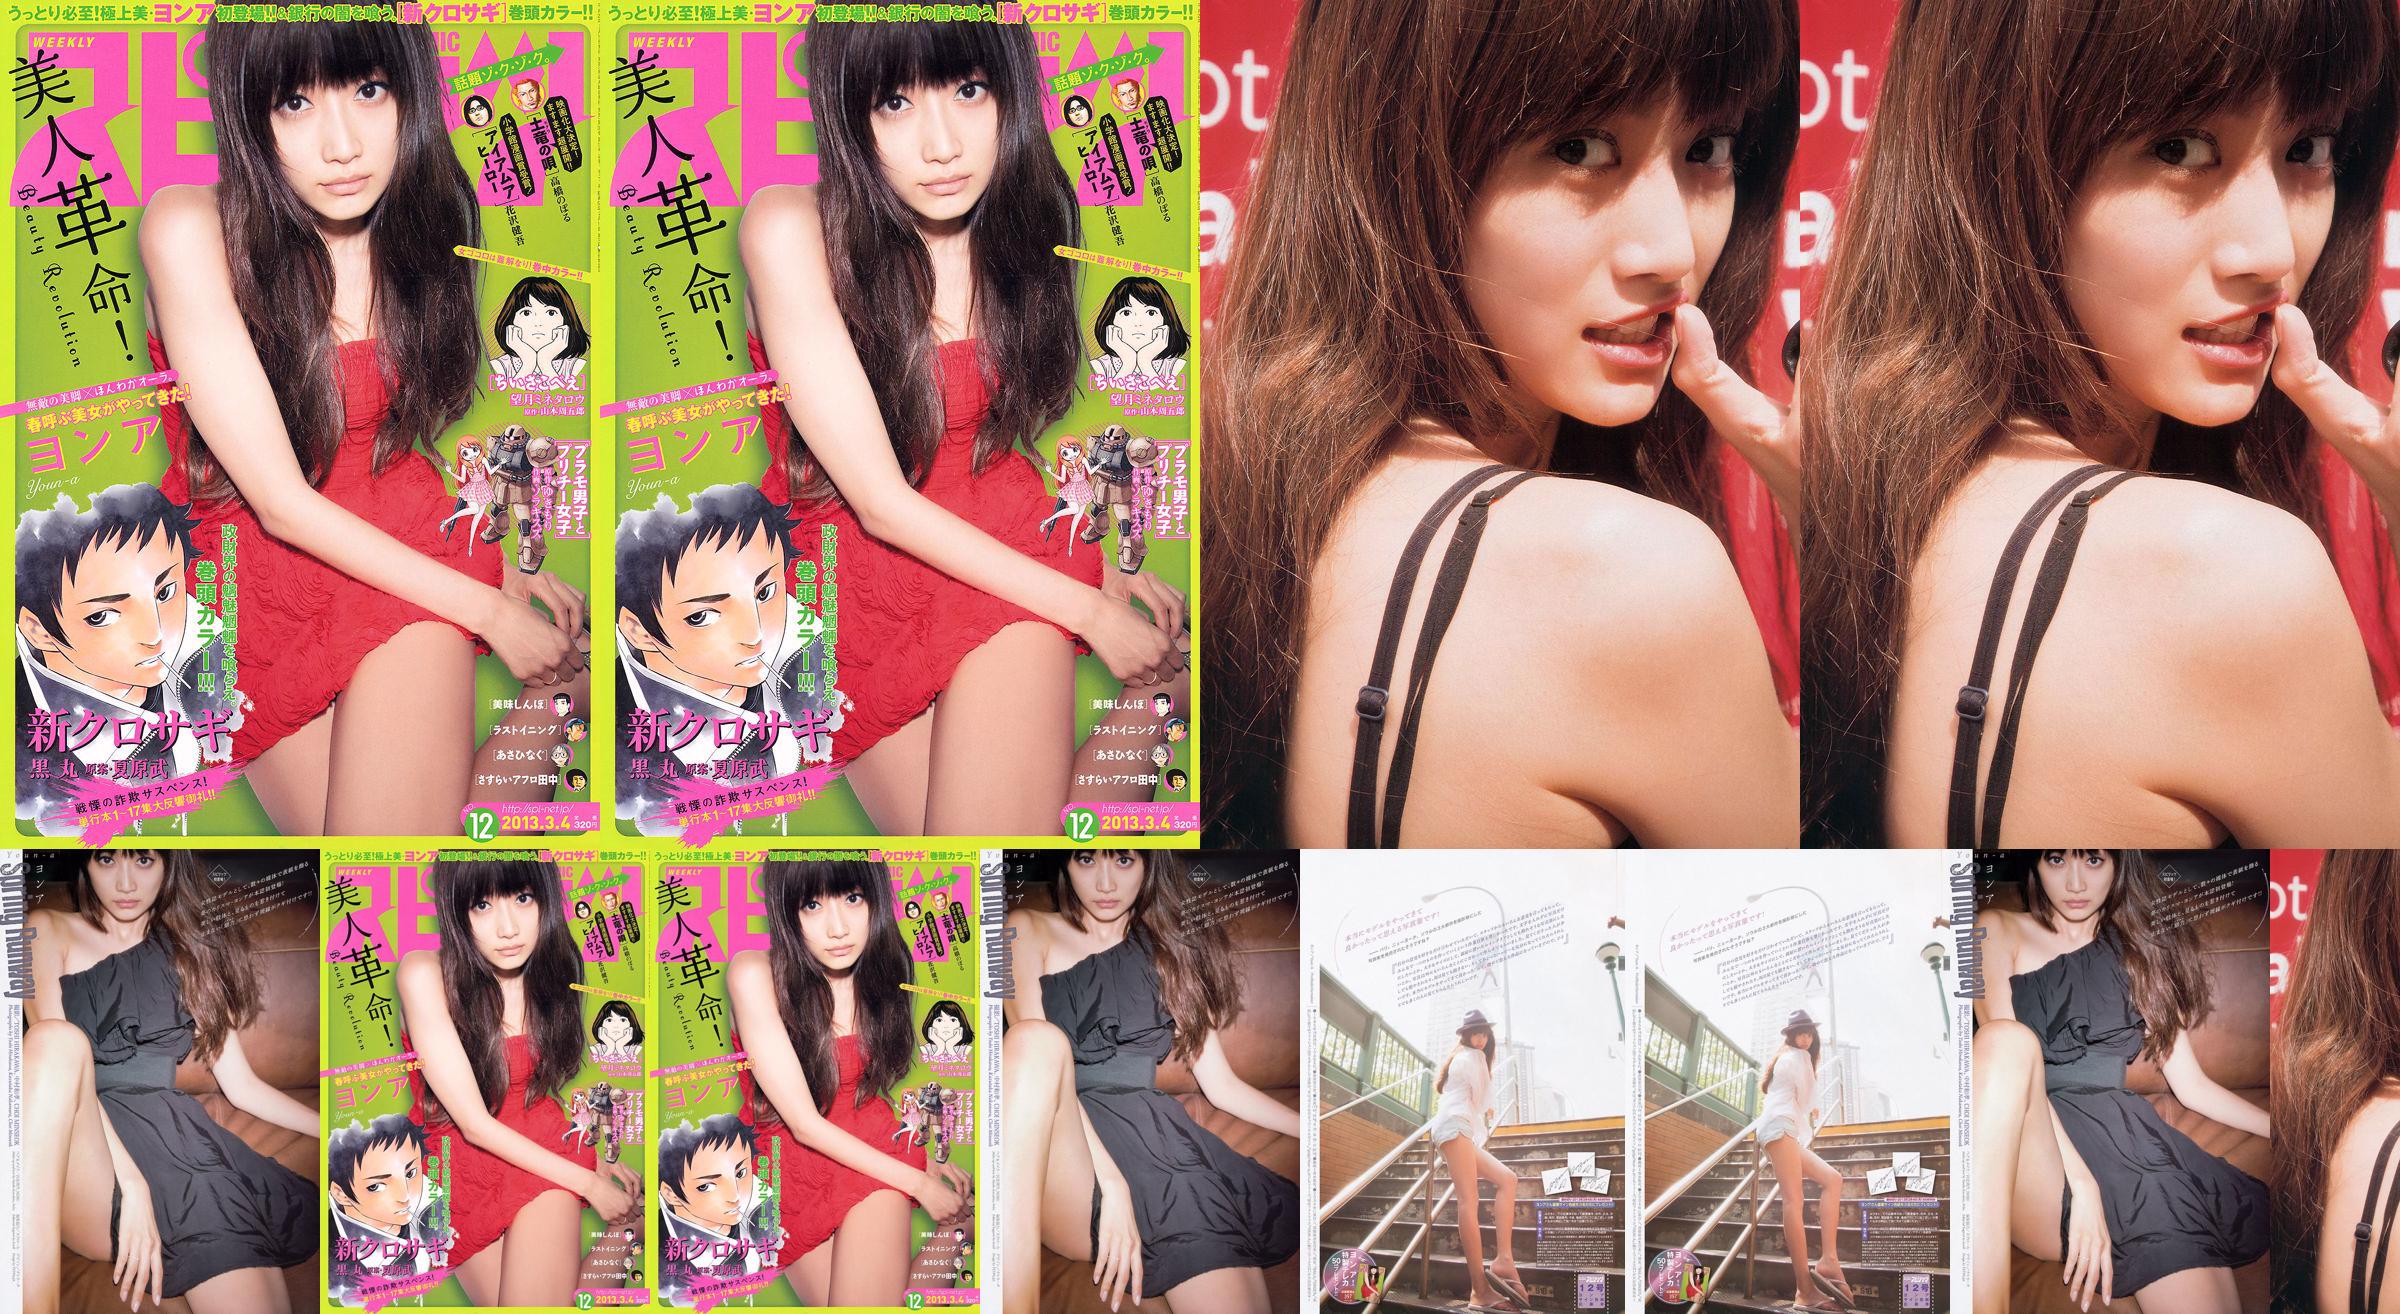 [Wöchentliche Big Comic Spirits] No. ン No. 2013 No.12 Photo Magazine No.0def6f Seite 2